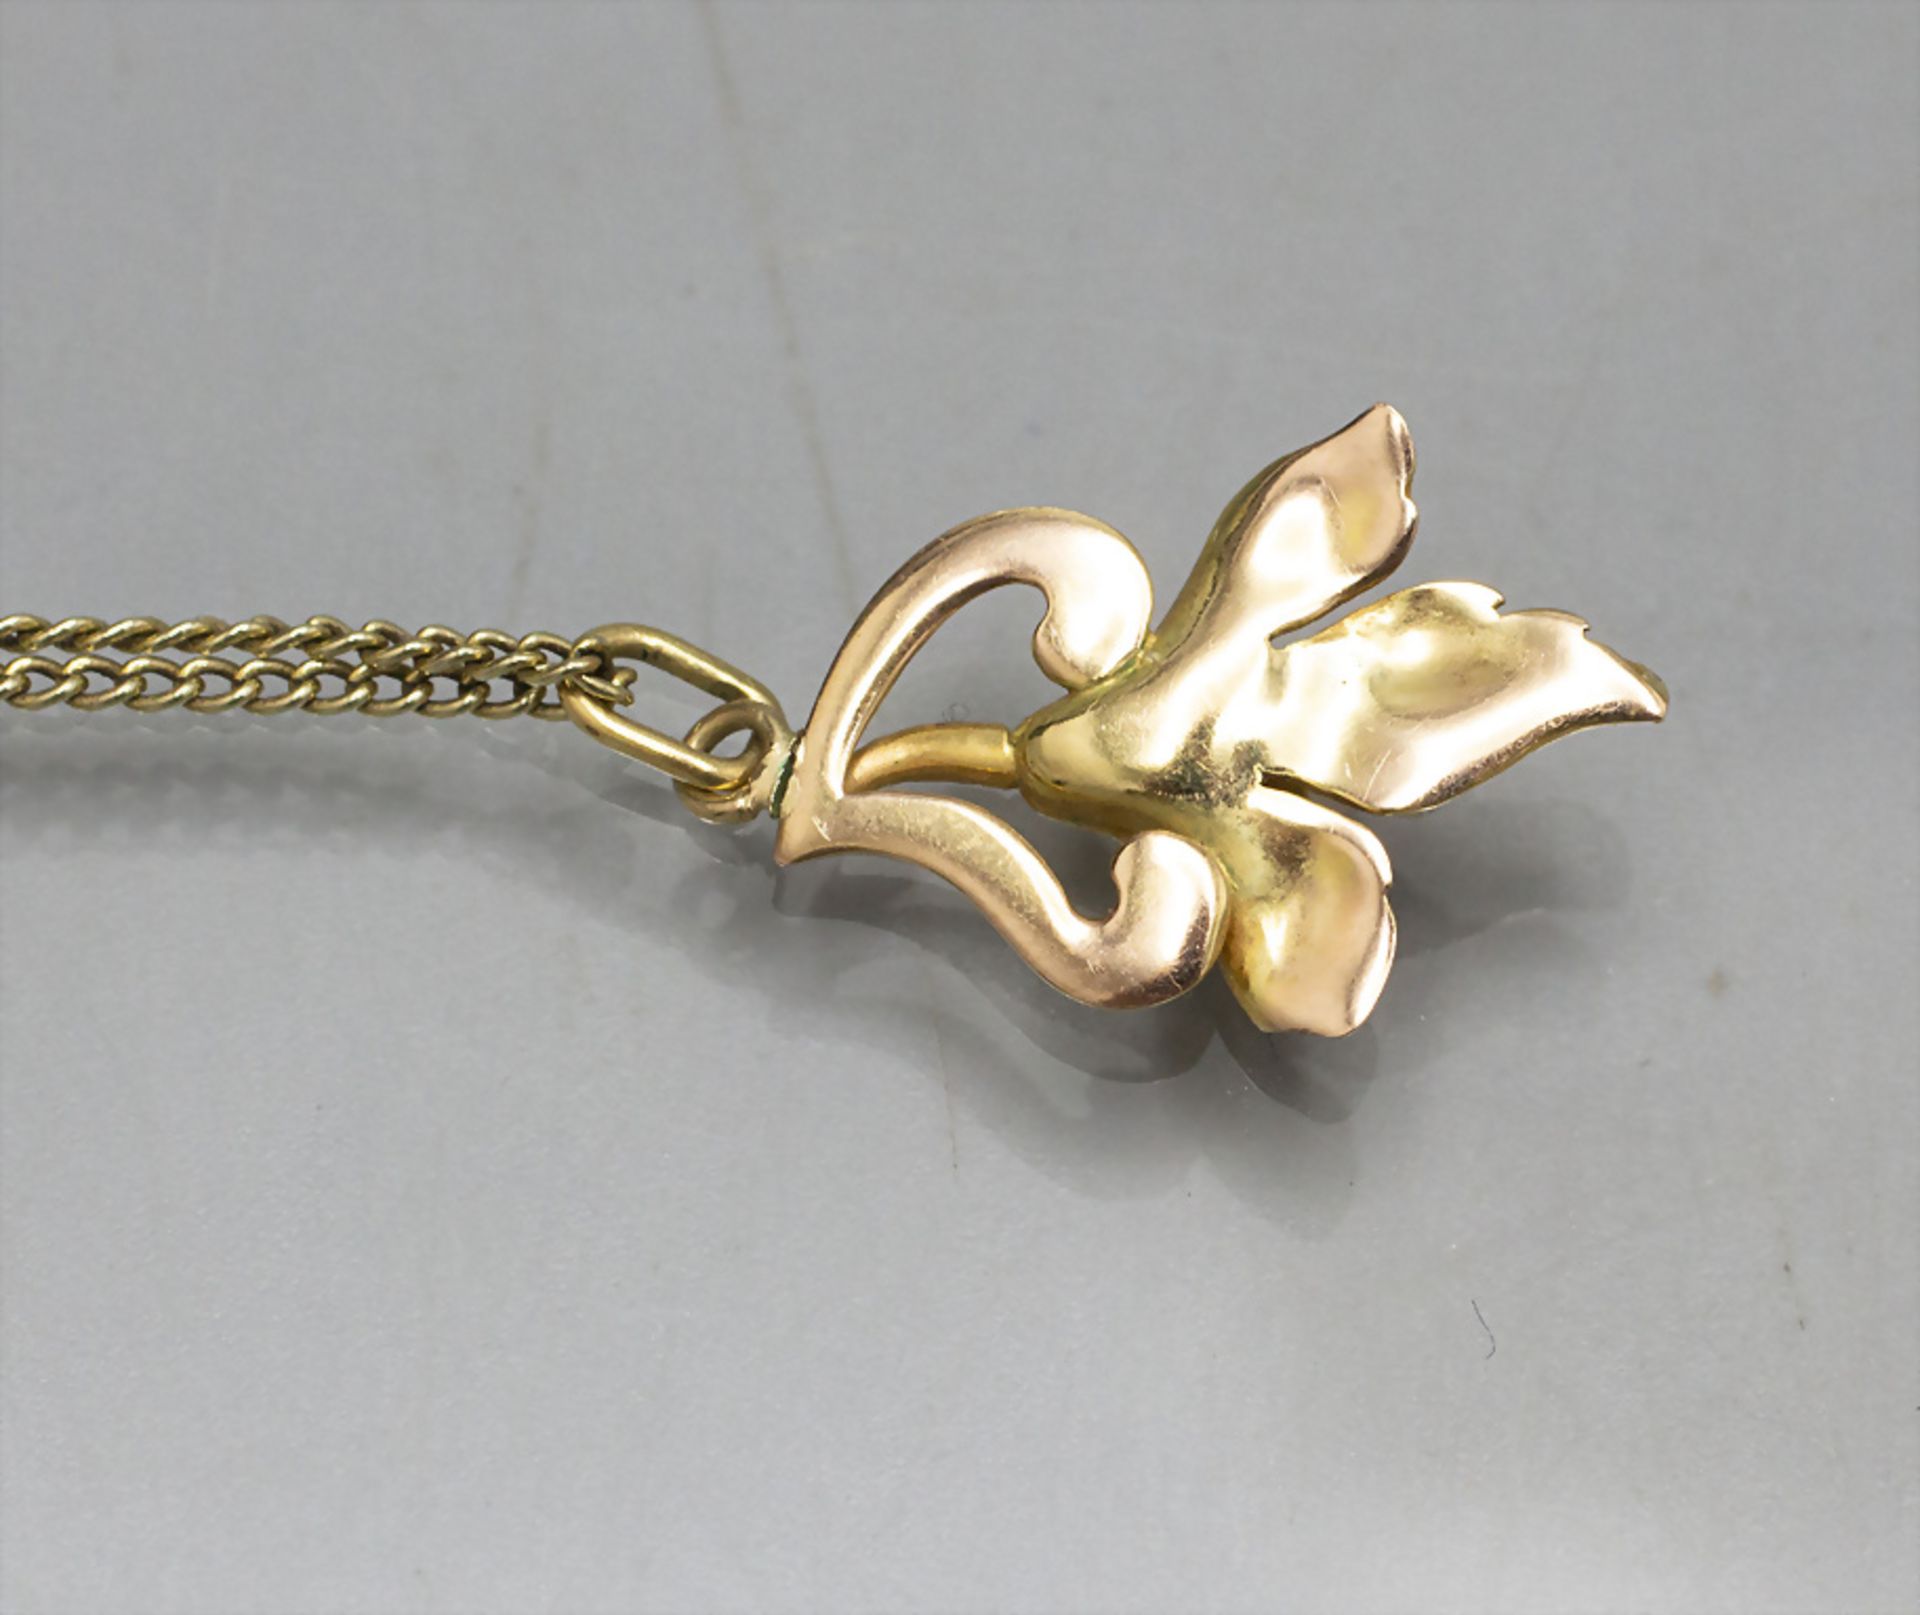 Goldkette mit Anhänger / A 14 ct gold necklace with pendant - Bild 3 aus 4